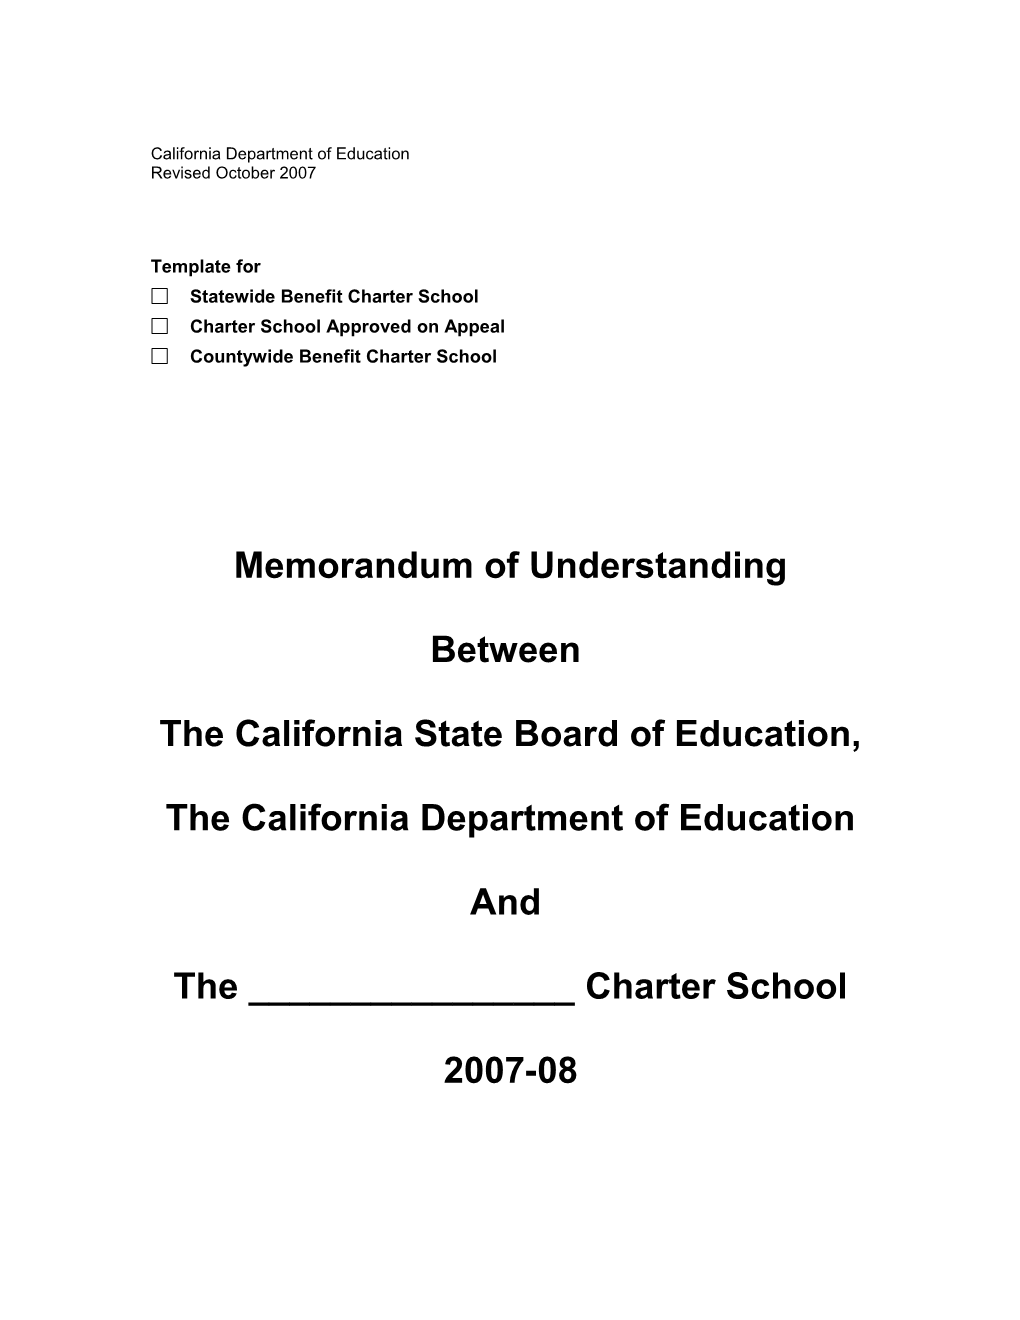 SBE Memorandum of Understanding - Resources (CA Dept of Education)